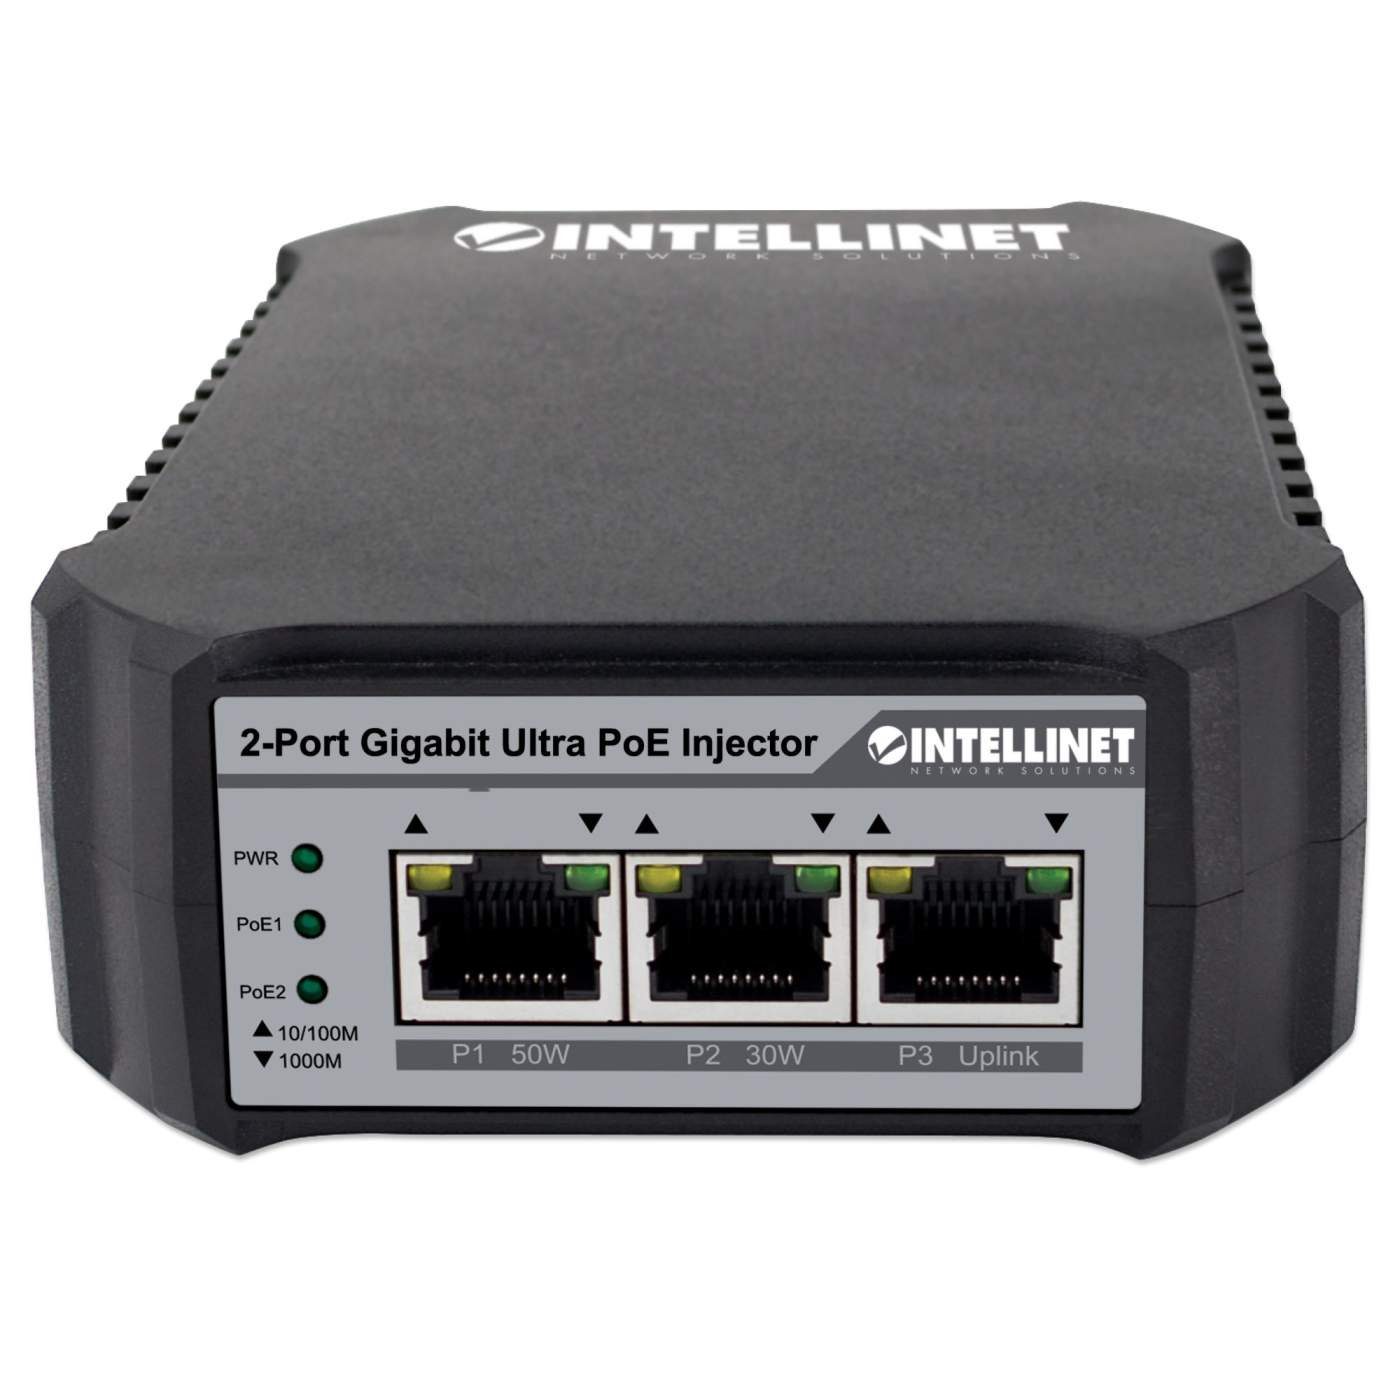 Intellinet 2-Port Gigabit Ultra PoE Injector (561488)